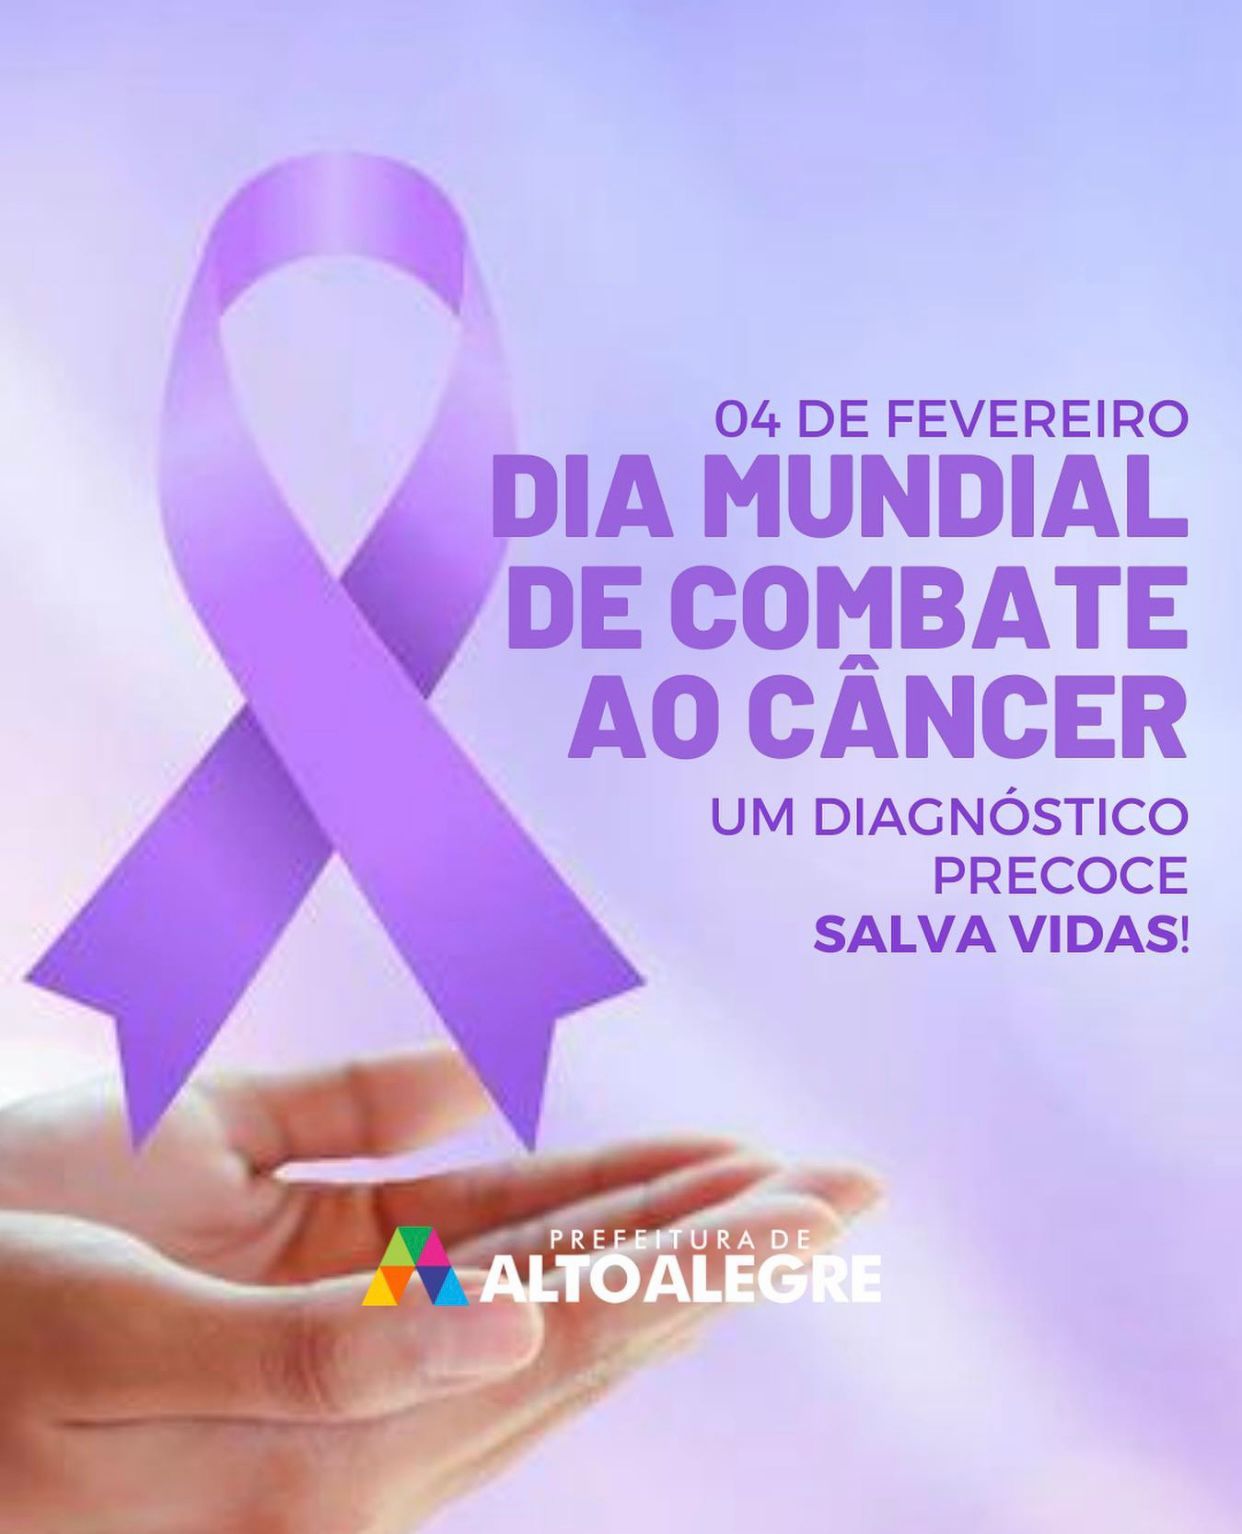 Dia Mundial de Combate ao Câncer